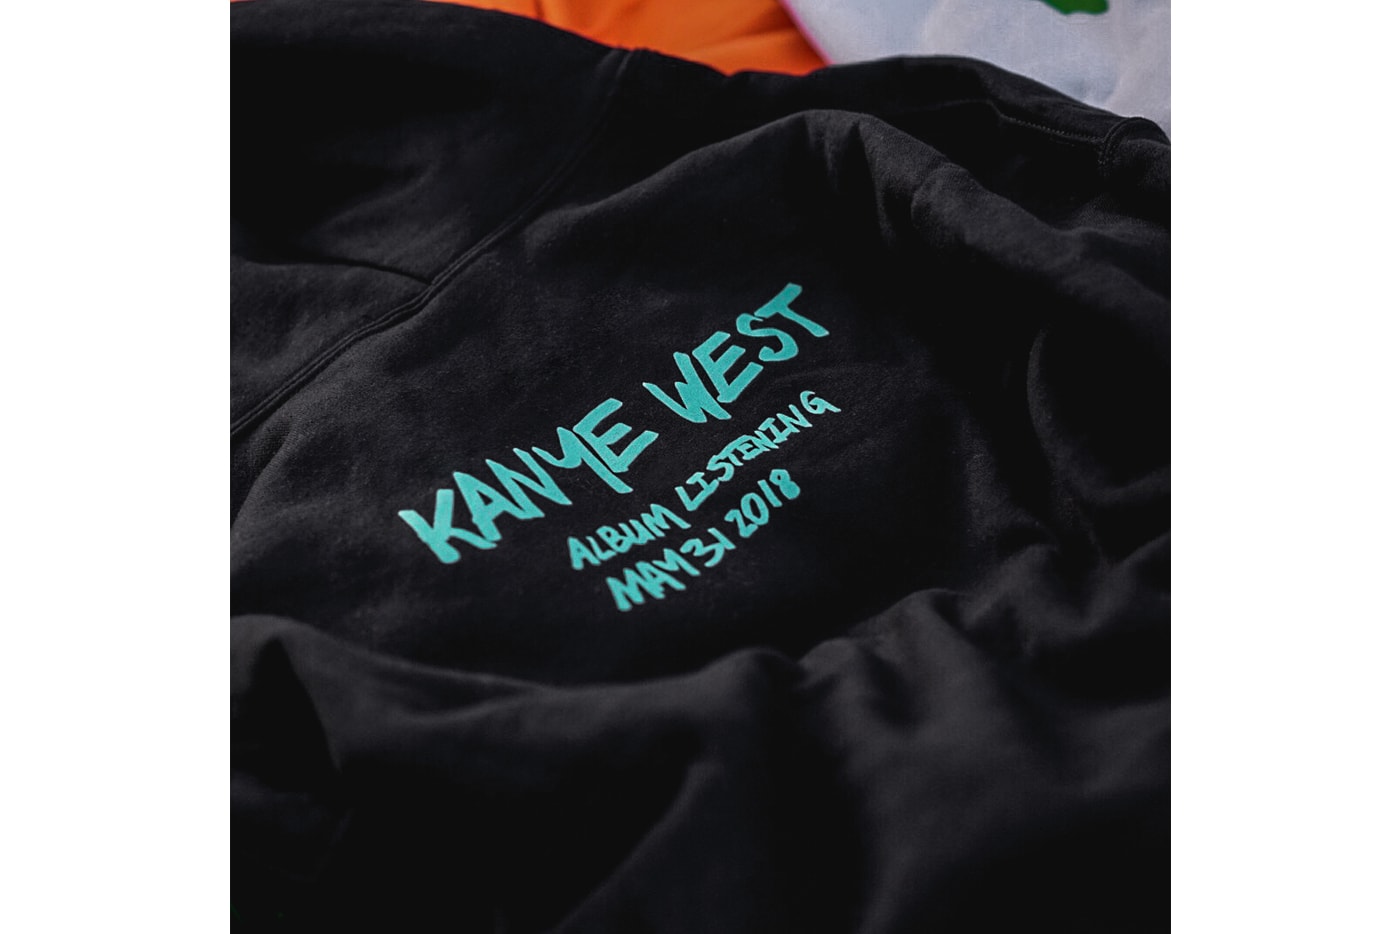 獨家揭曉 Kanye West Wyoming 新專輯試聽會周邊商品